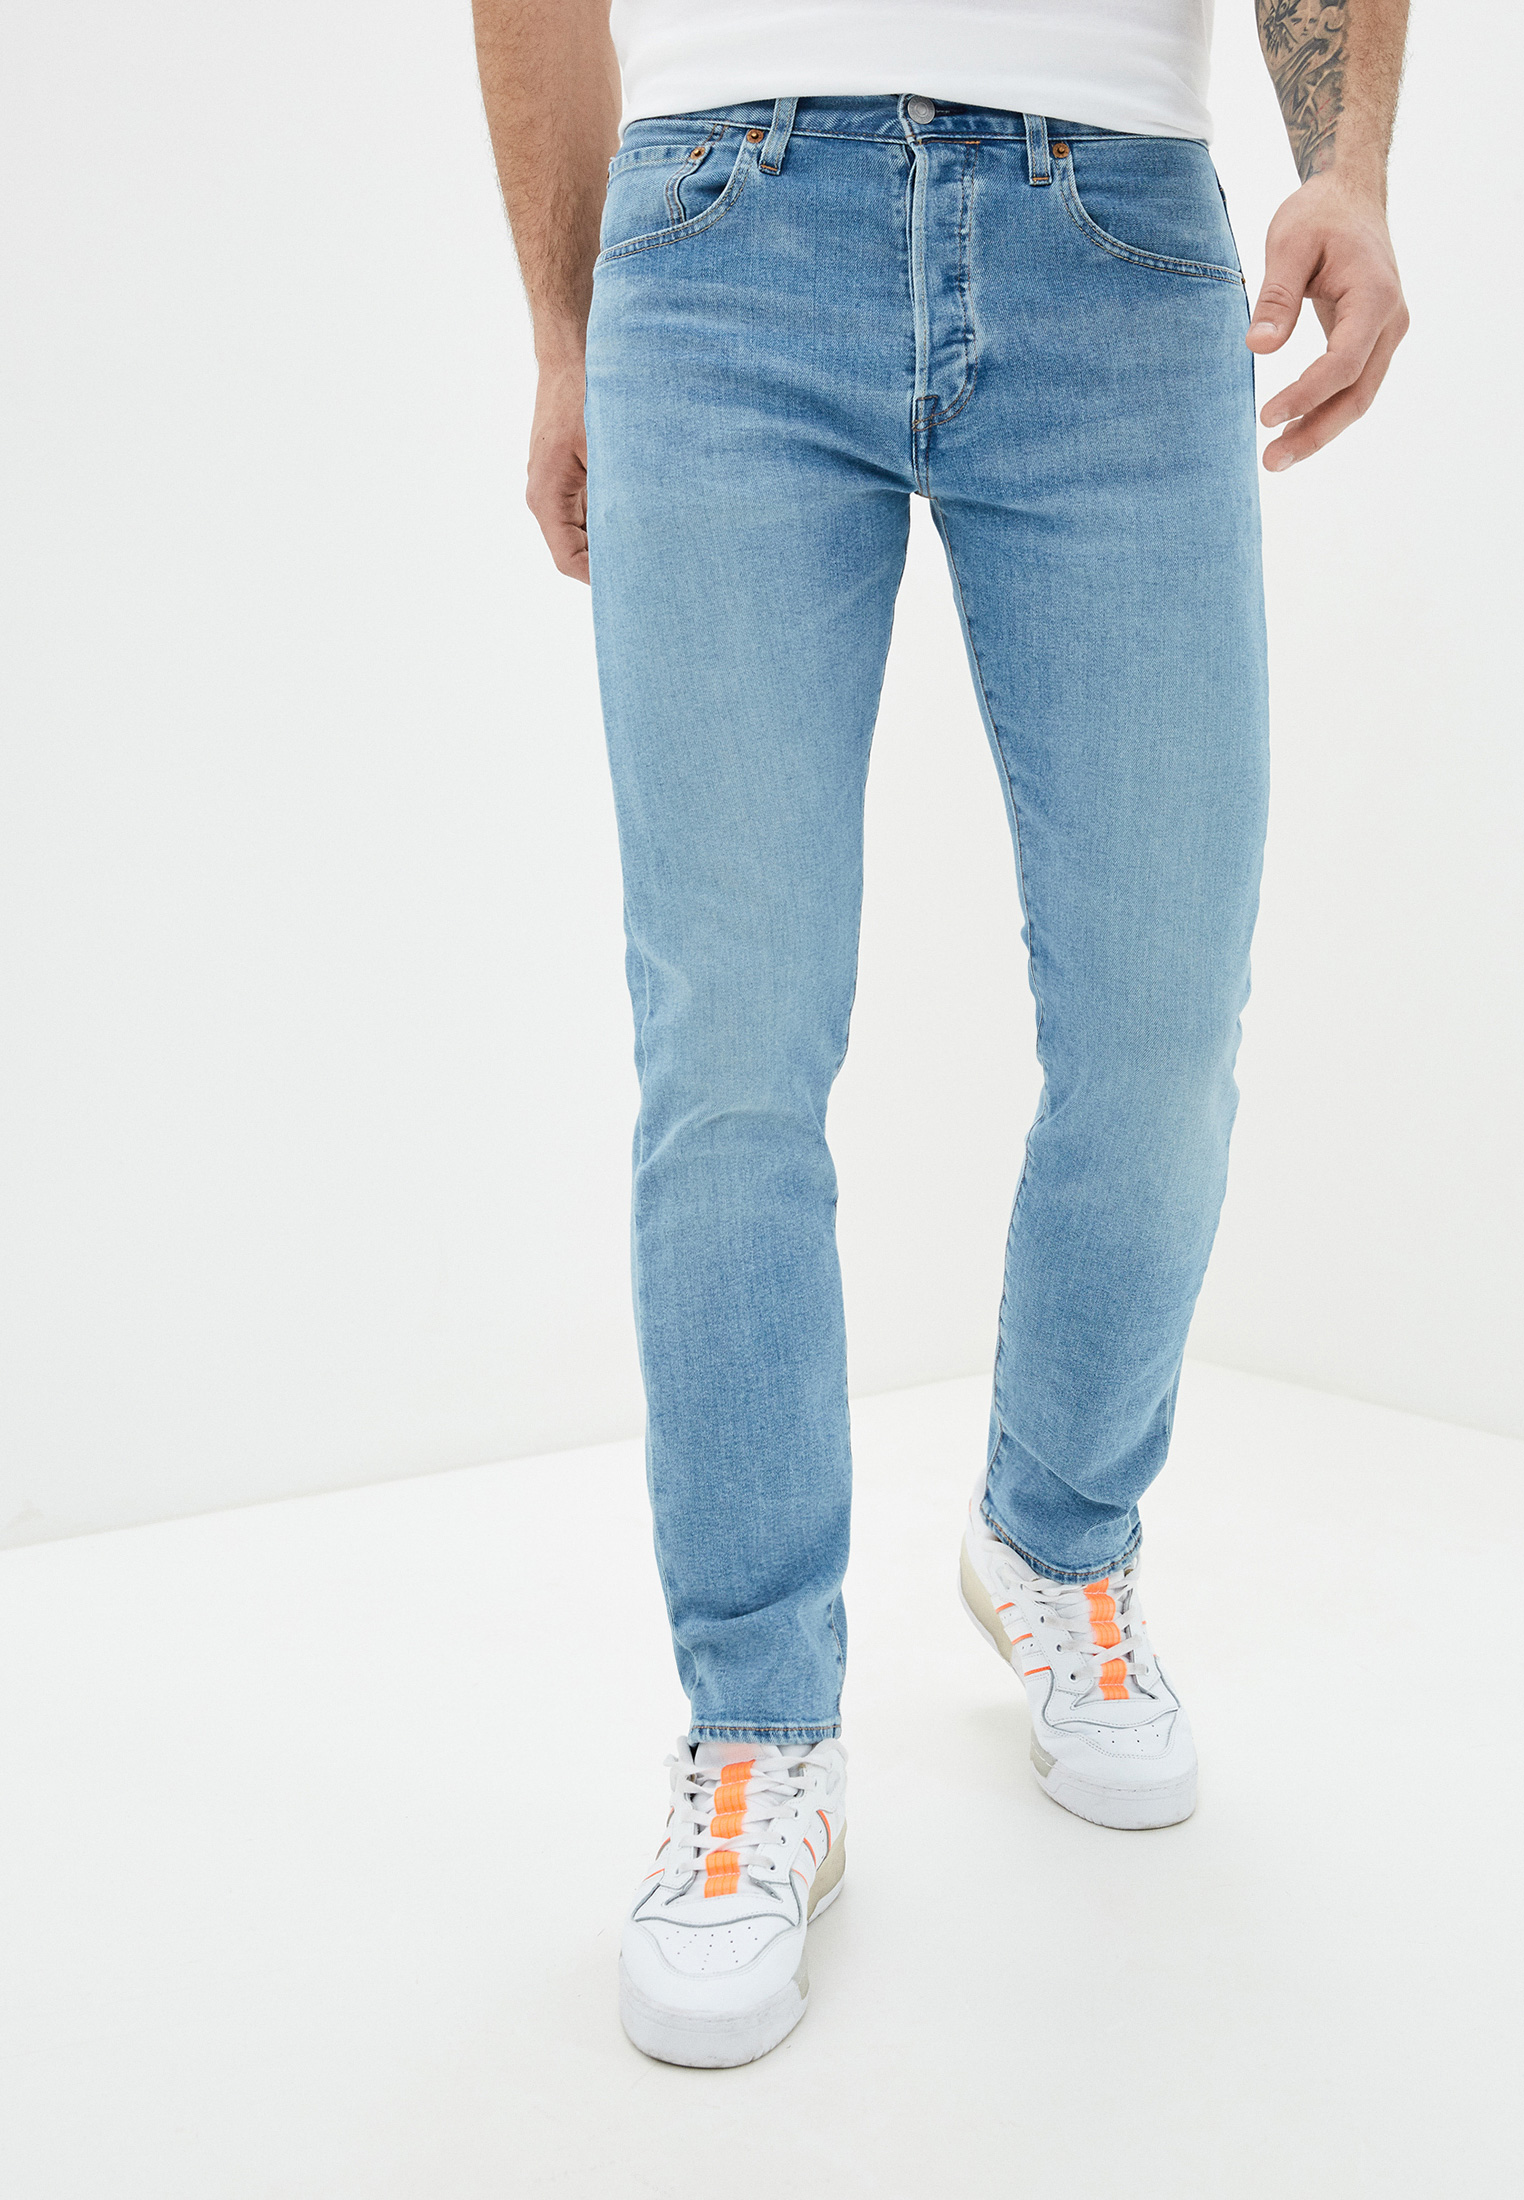 Голубые мужские джинсы купить. Levi’s модели 501 Slim Taper. Левис 501 мужские голубые. Модель джинсов Levis 501. Джинсы левайс 501 голубые.